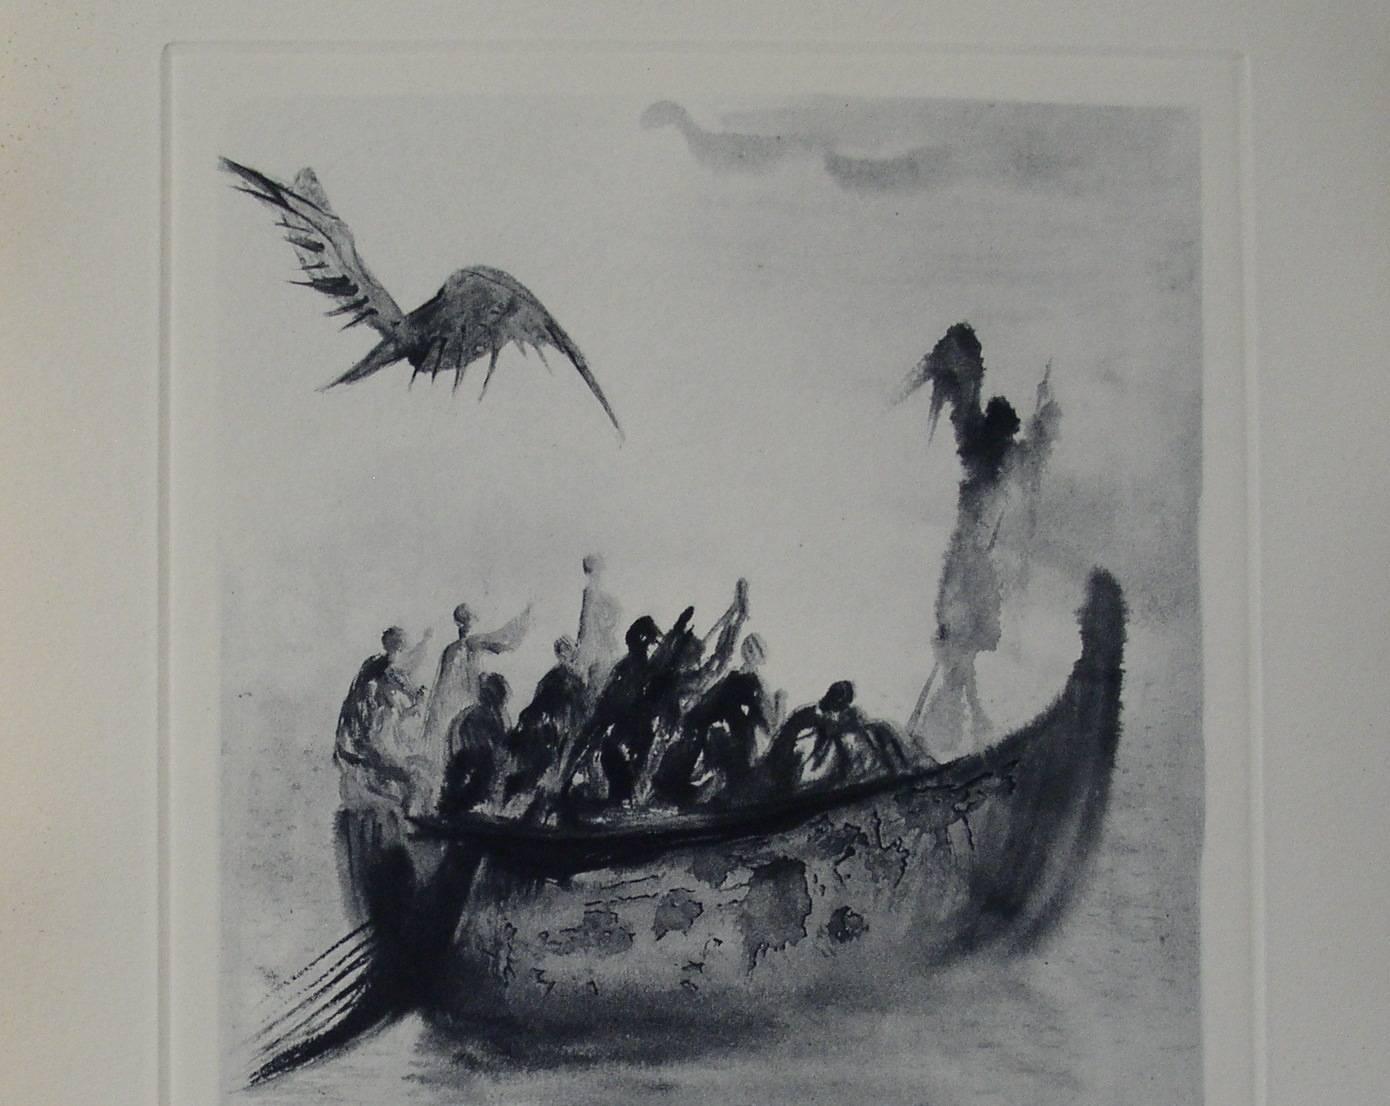 La barque du nocher - Etching - 150 copies - Print by Salvador Dalí